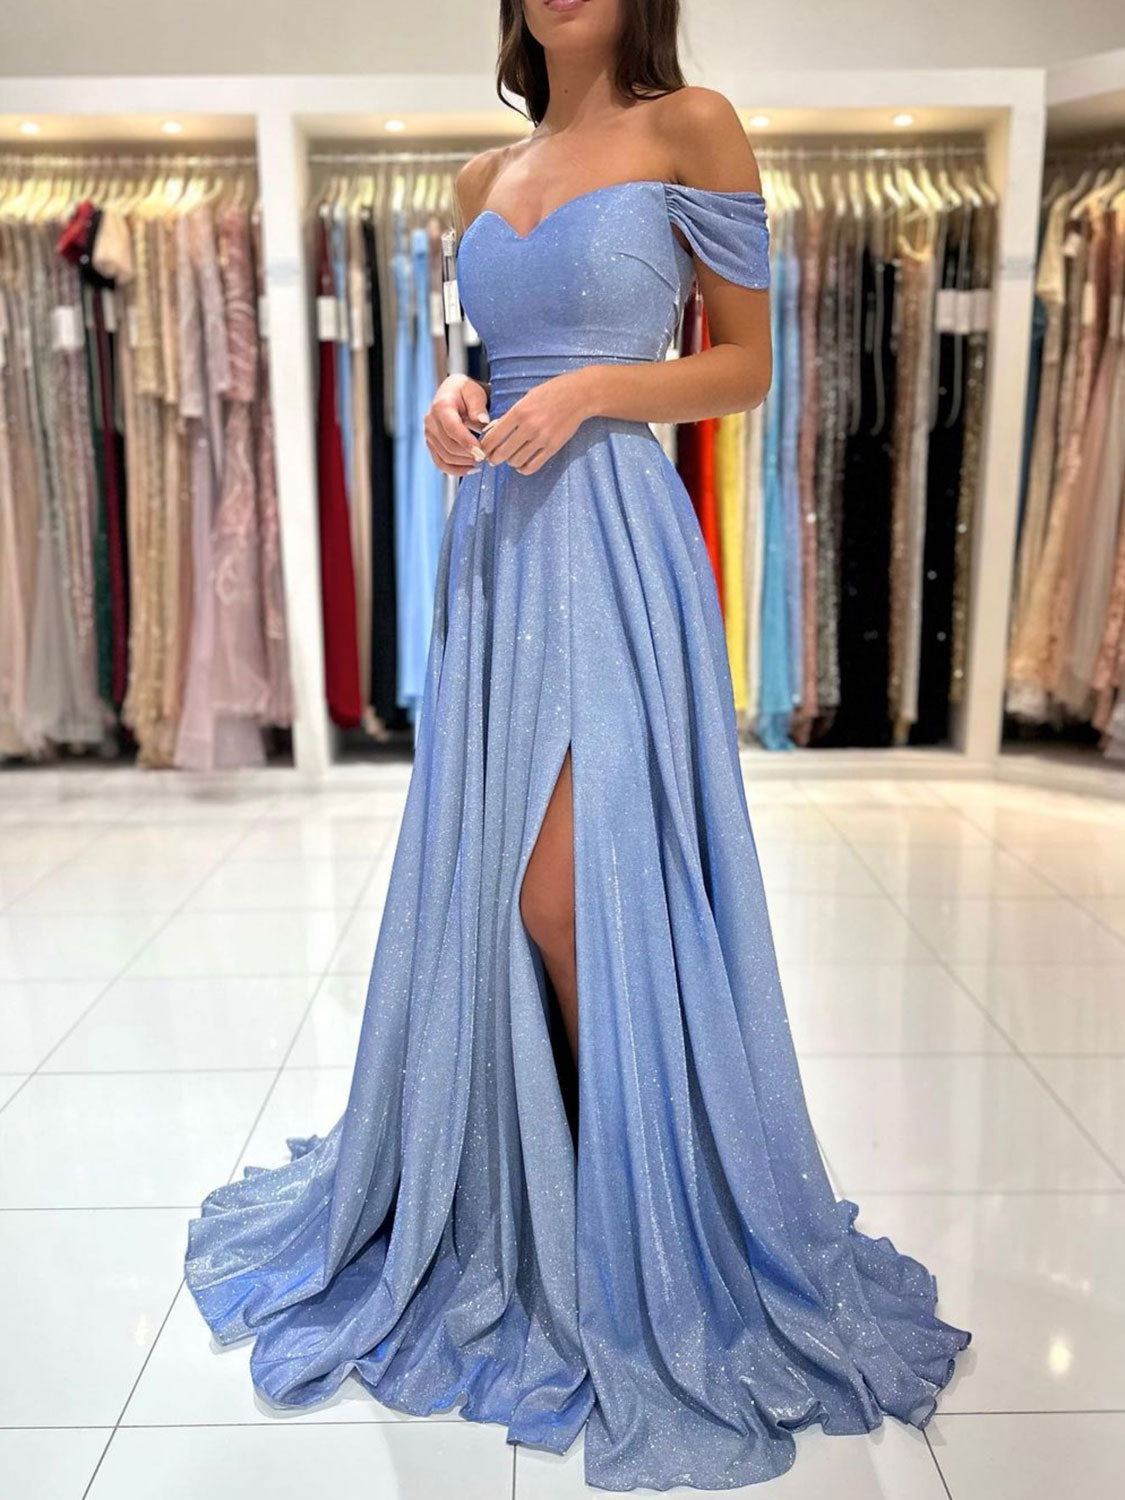 
                  
                    A-Line Sweetheart Neck Off Shoulder Blue Long Prom Dress, Blue Formal Evening Dress
                  
                